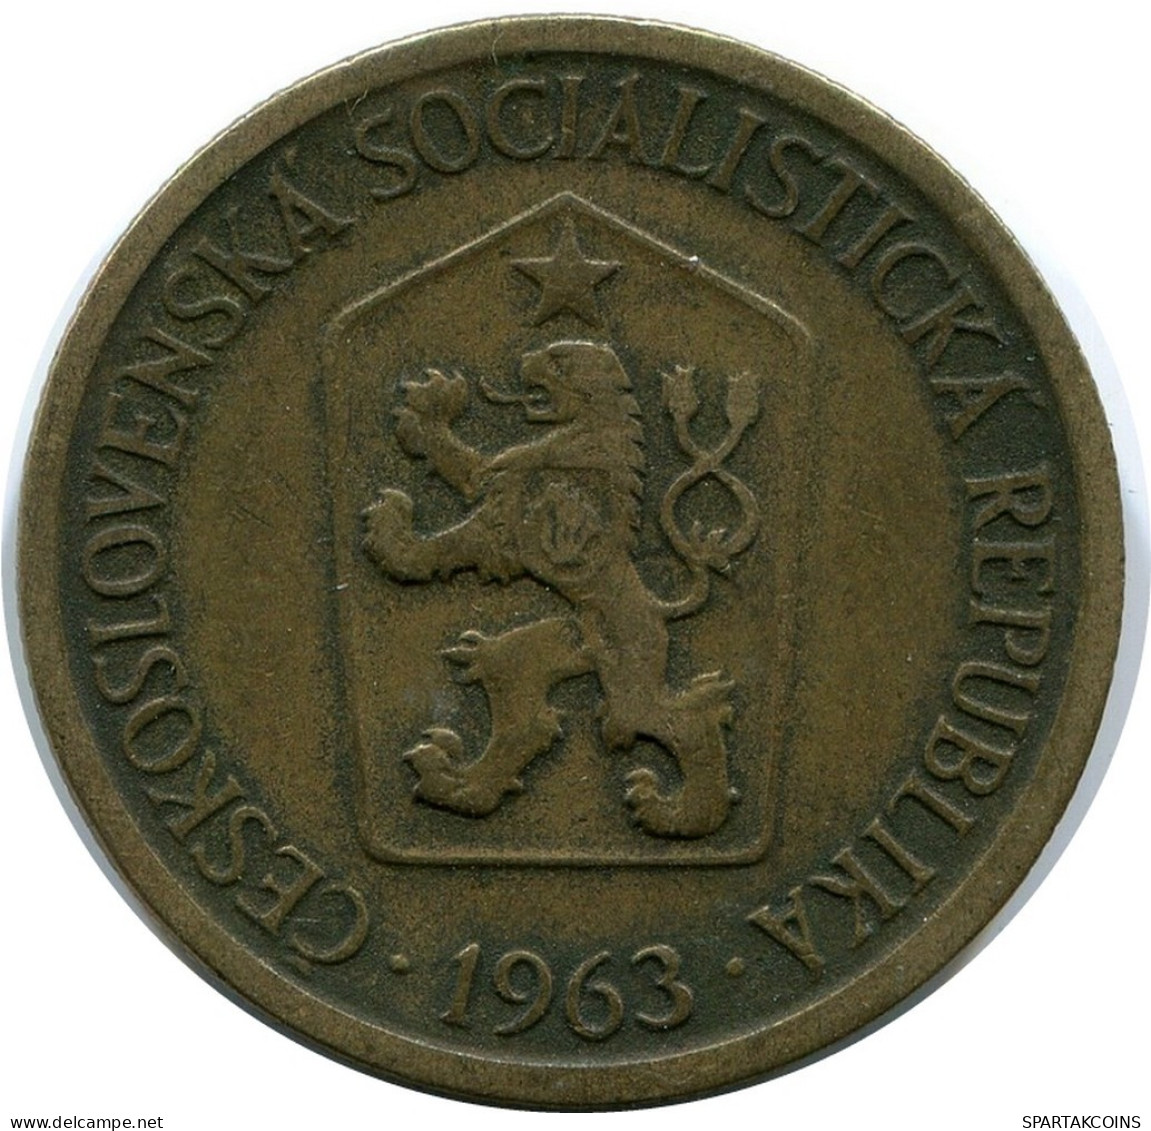 1 KORUNA 1936 TSCHECHOSLOWAKEI CZECHOSLOWAKEI SLOVAKIA Münze #AR227.D.A - Czechoslovakia